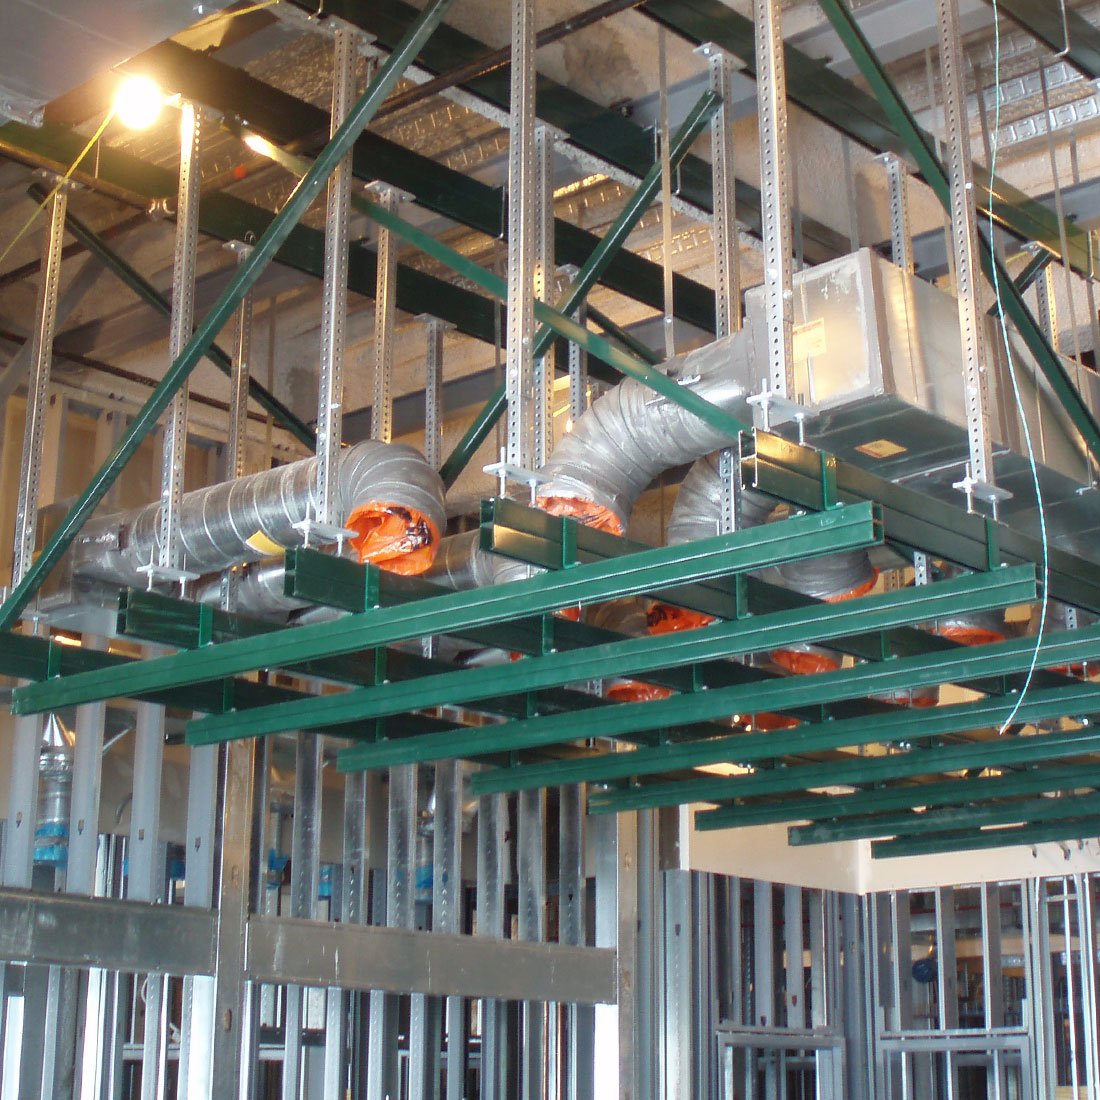 Ceiling Grid: Unistrut Ceiling Grid System inside of a hospital | Medical COnstruction | Healthcare Construction | Unistrut Grid